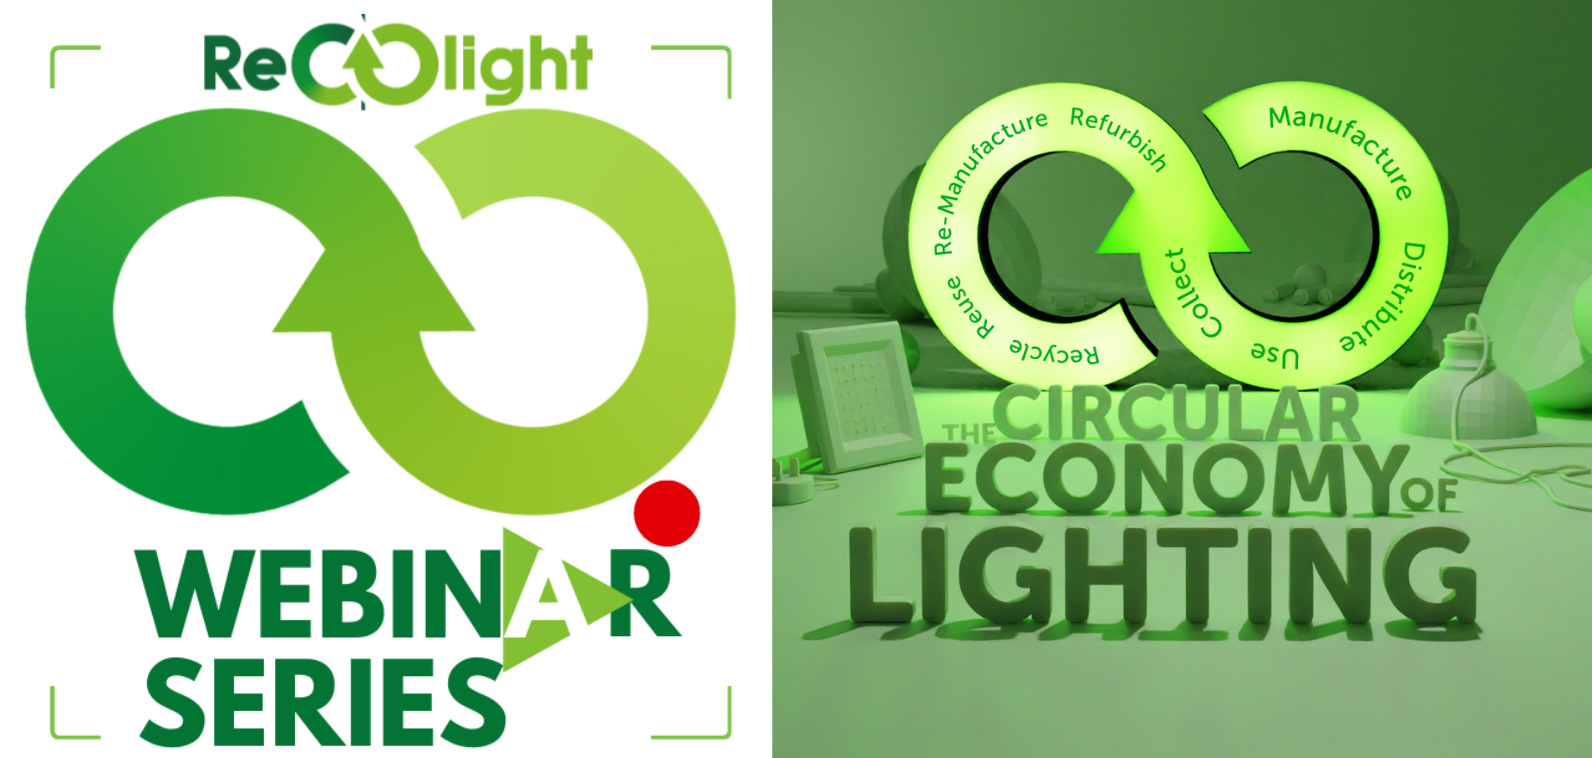 Recolight announces Circular Economy webinars for 2023